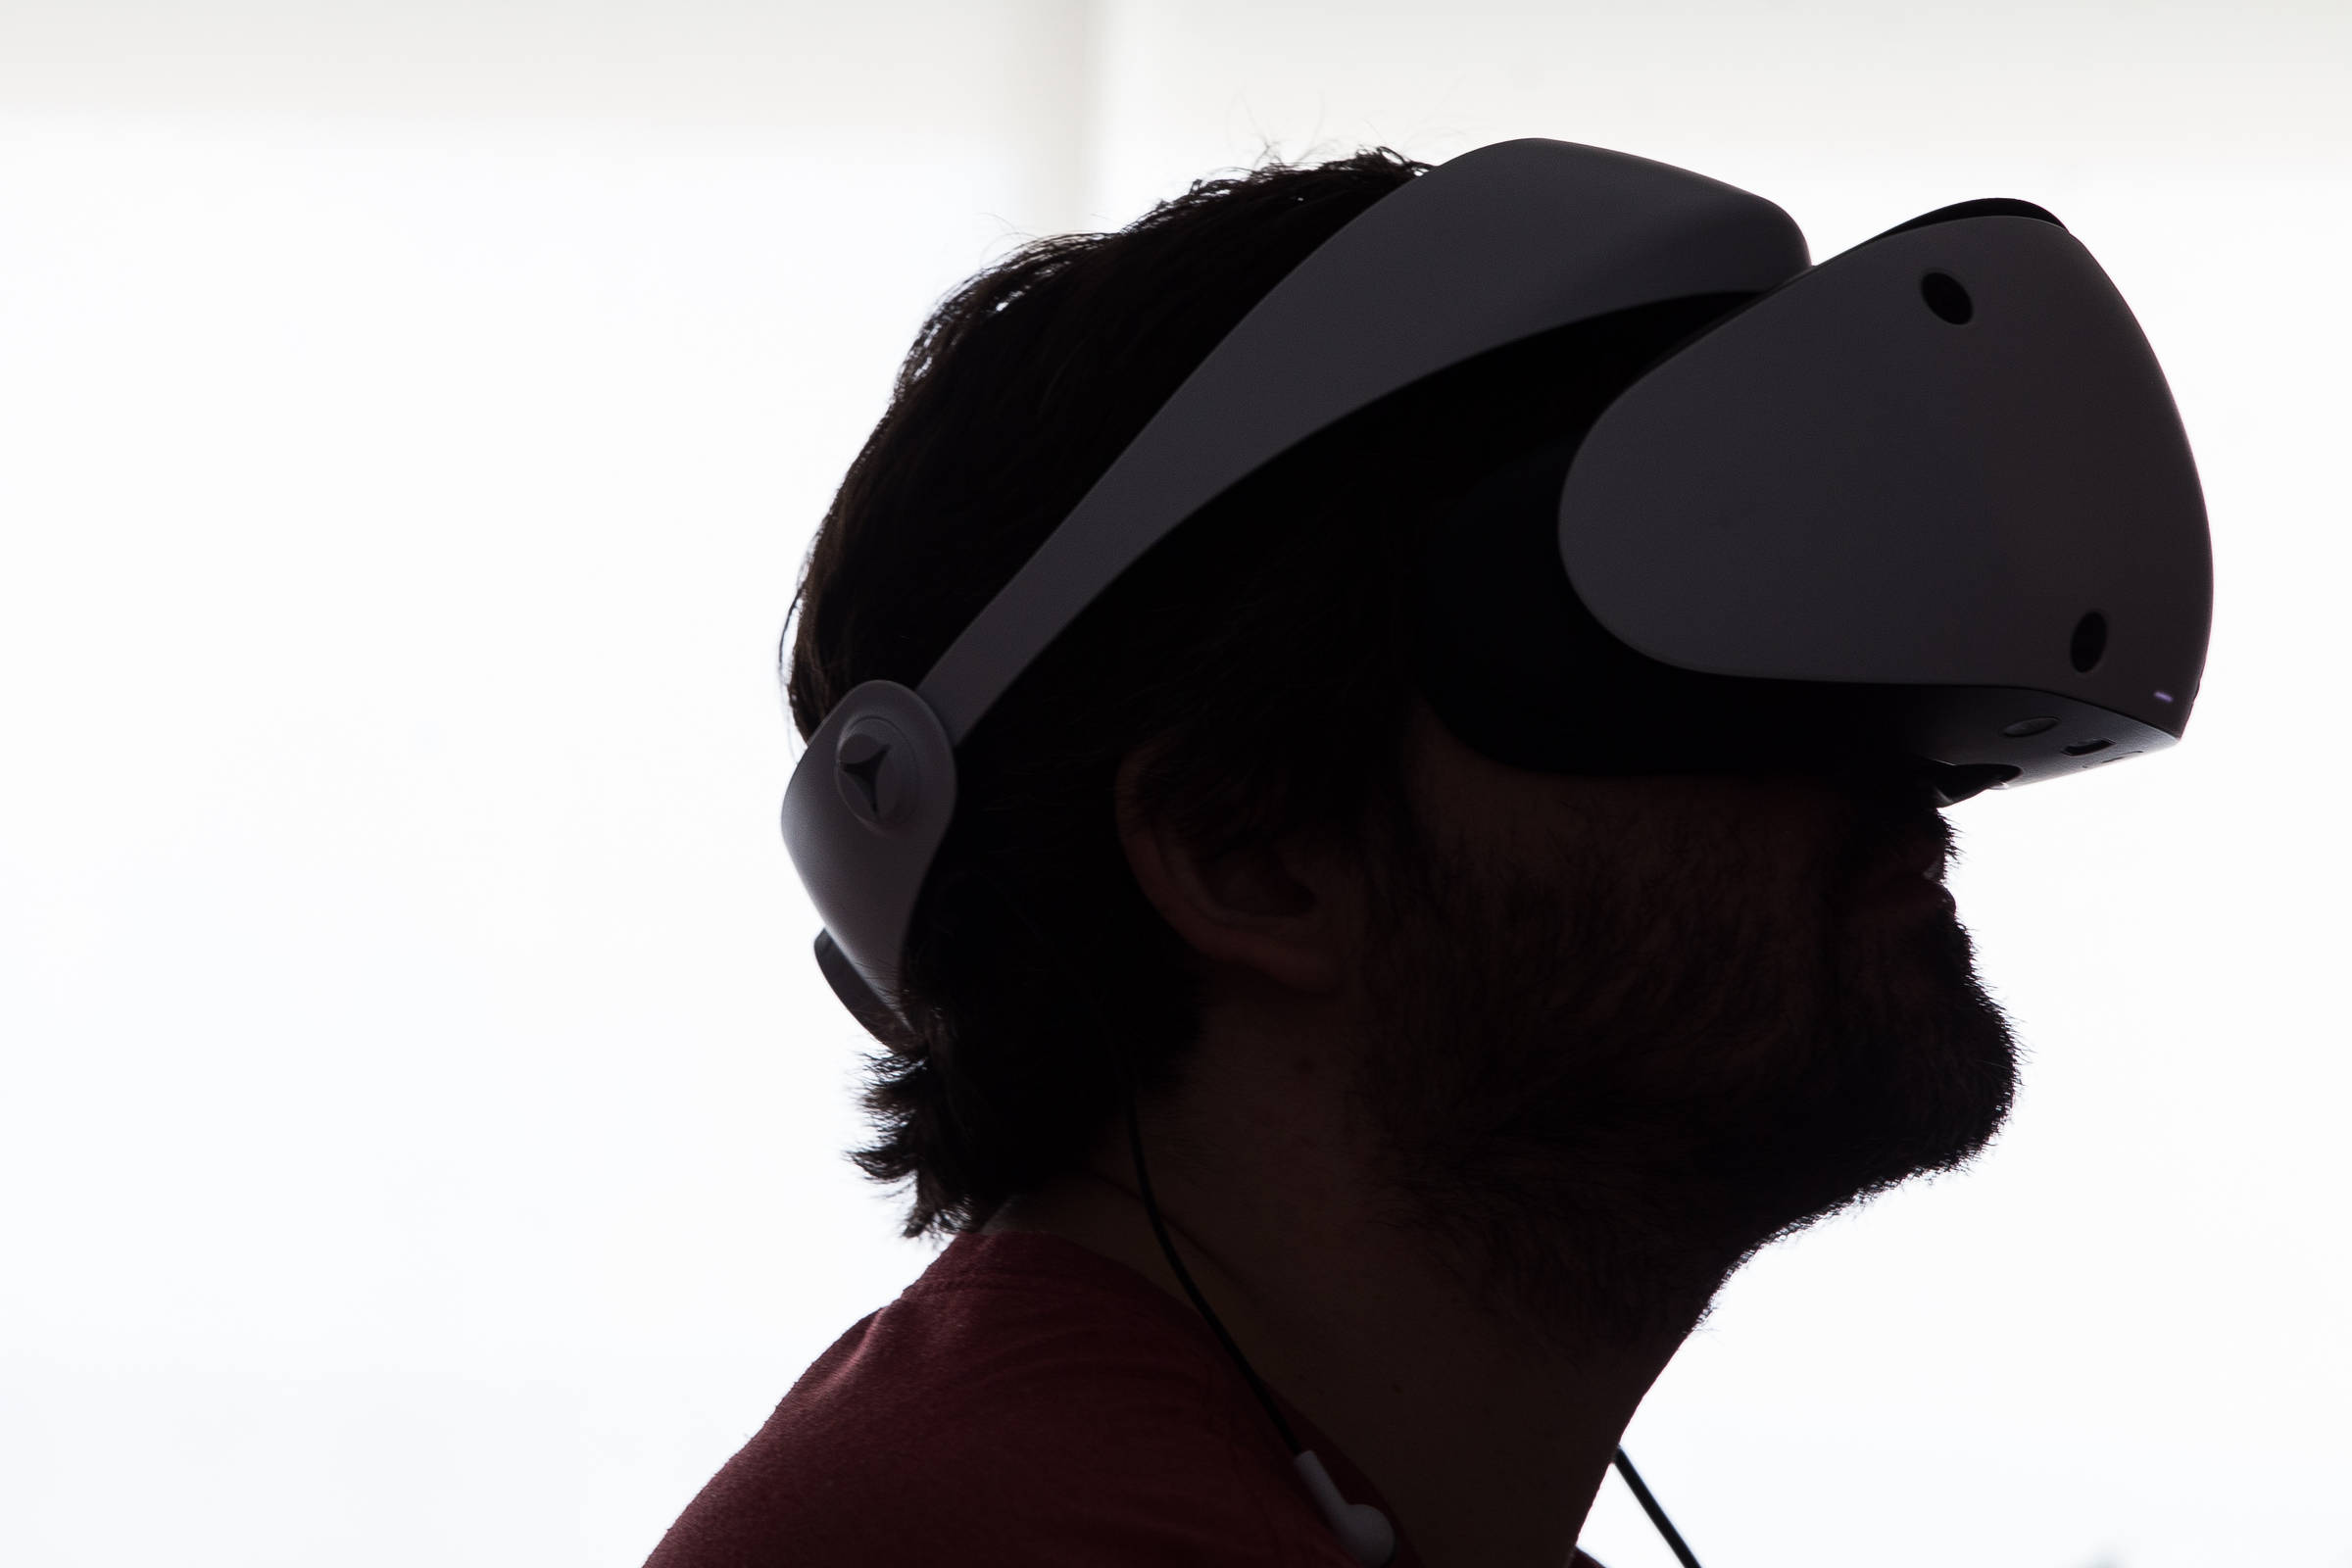 Novo videogame impressiona pela qualidade na realidade virtual; confira